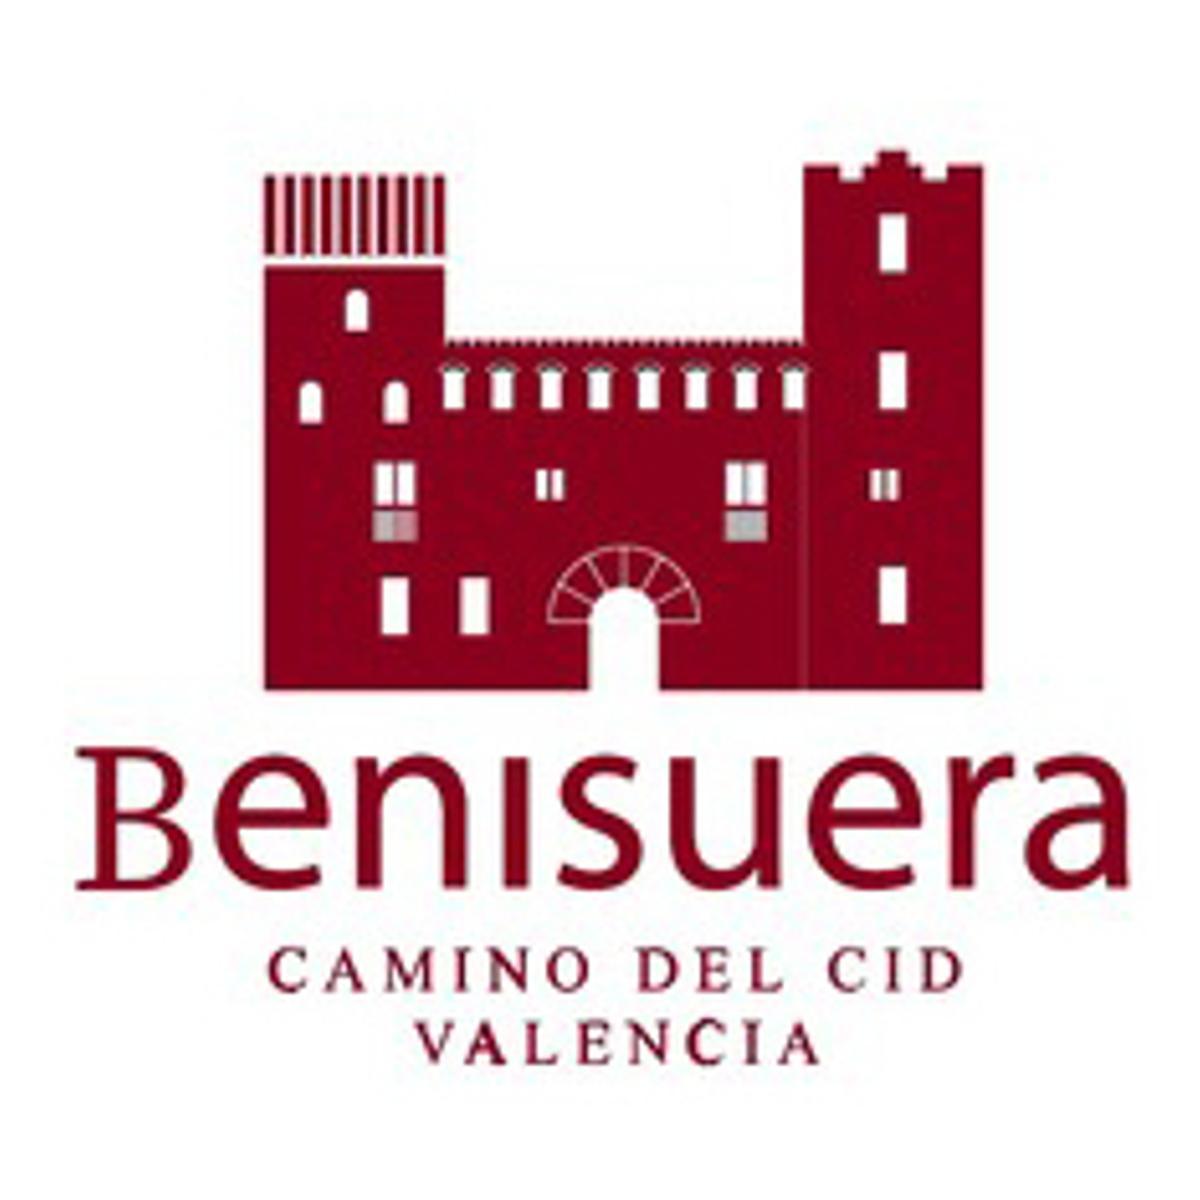 El sello del Palacio de Benissuera